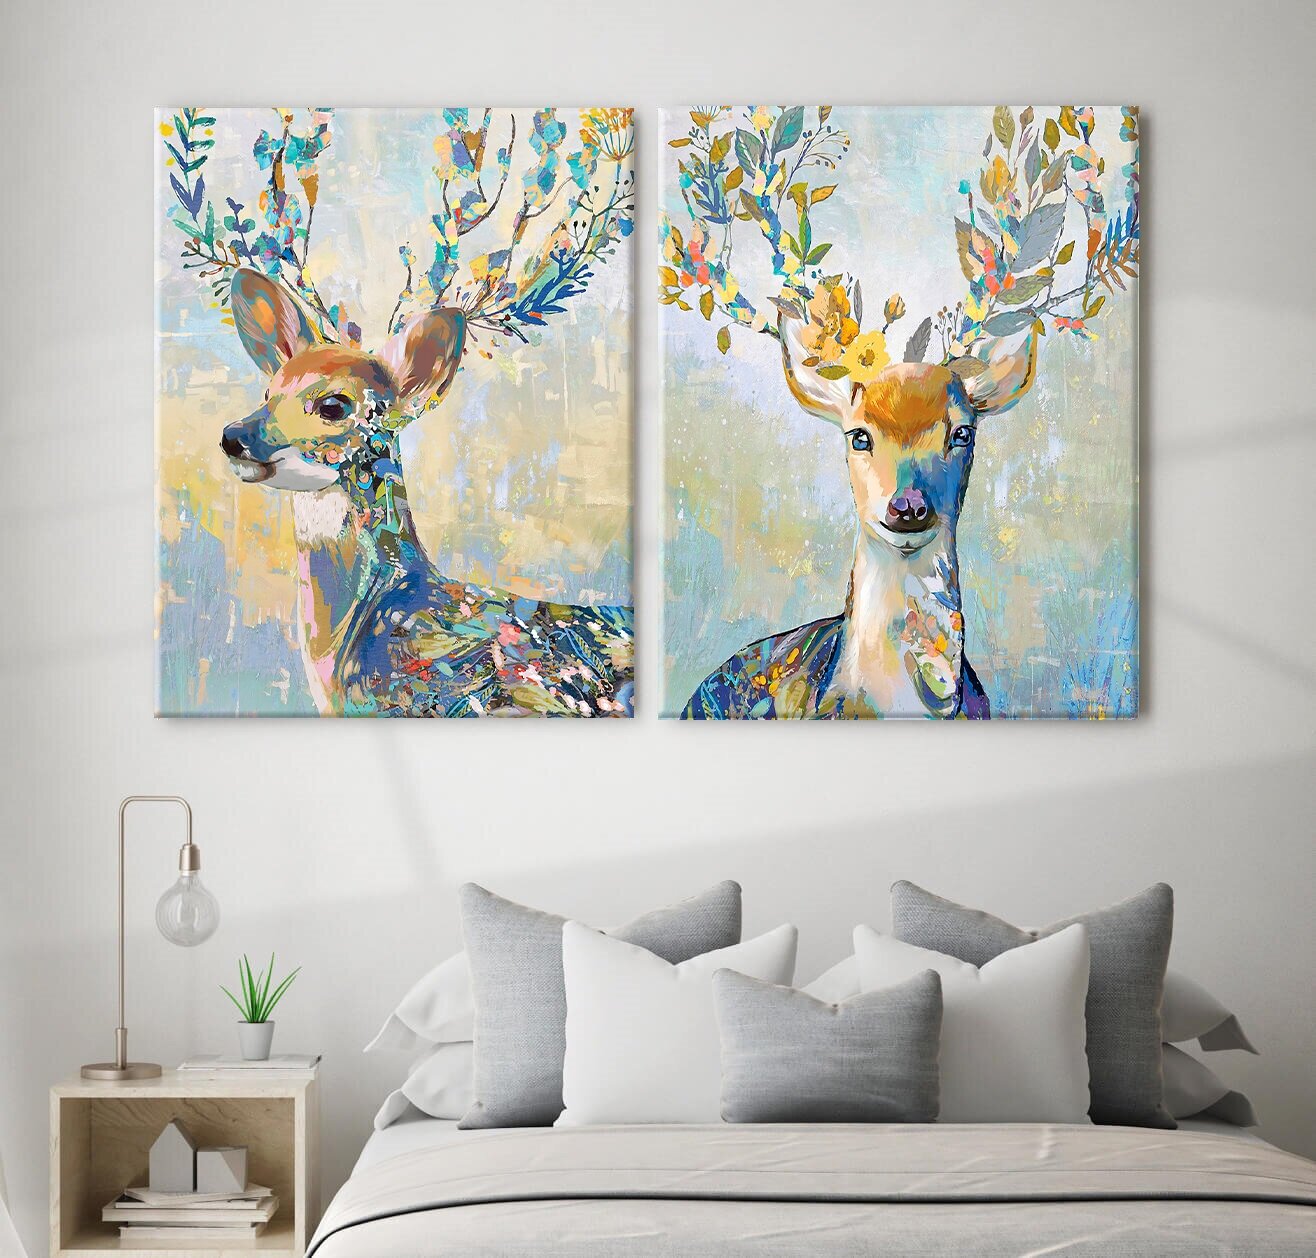 Картины на холсте 40х50 см "Животные, Олень ветвистые рога, мазки", набор картин для интерьера на стену, 2 шт на подрамнике